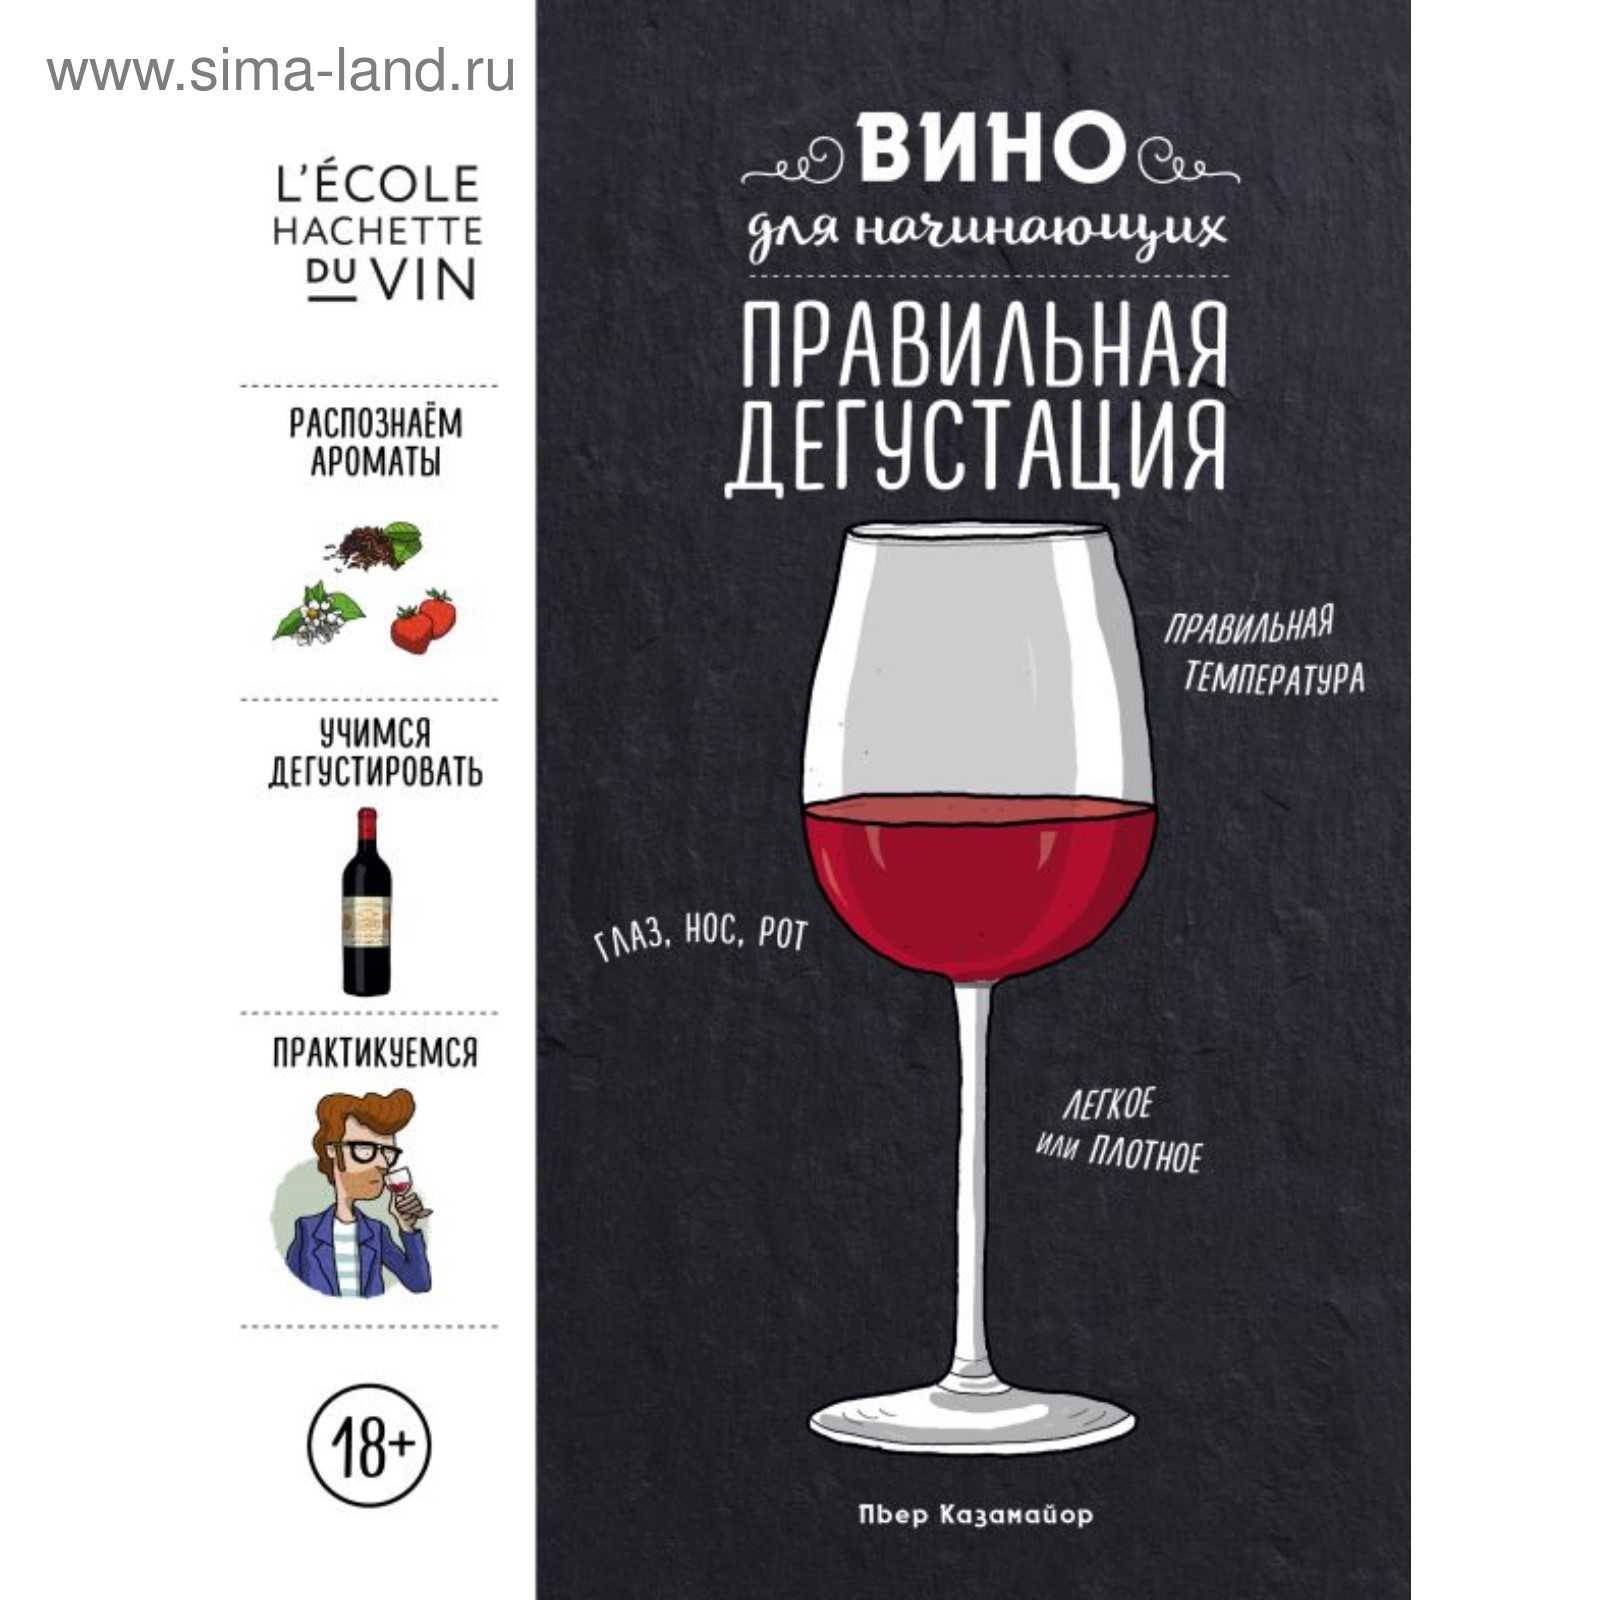 Дегустация вин россии, слепое сравнение с иностранными винами